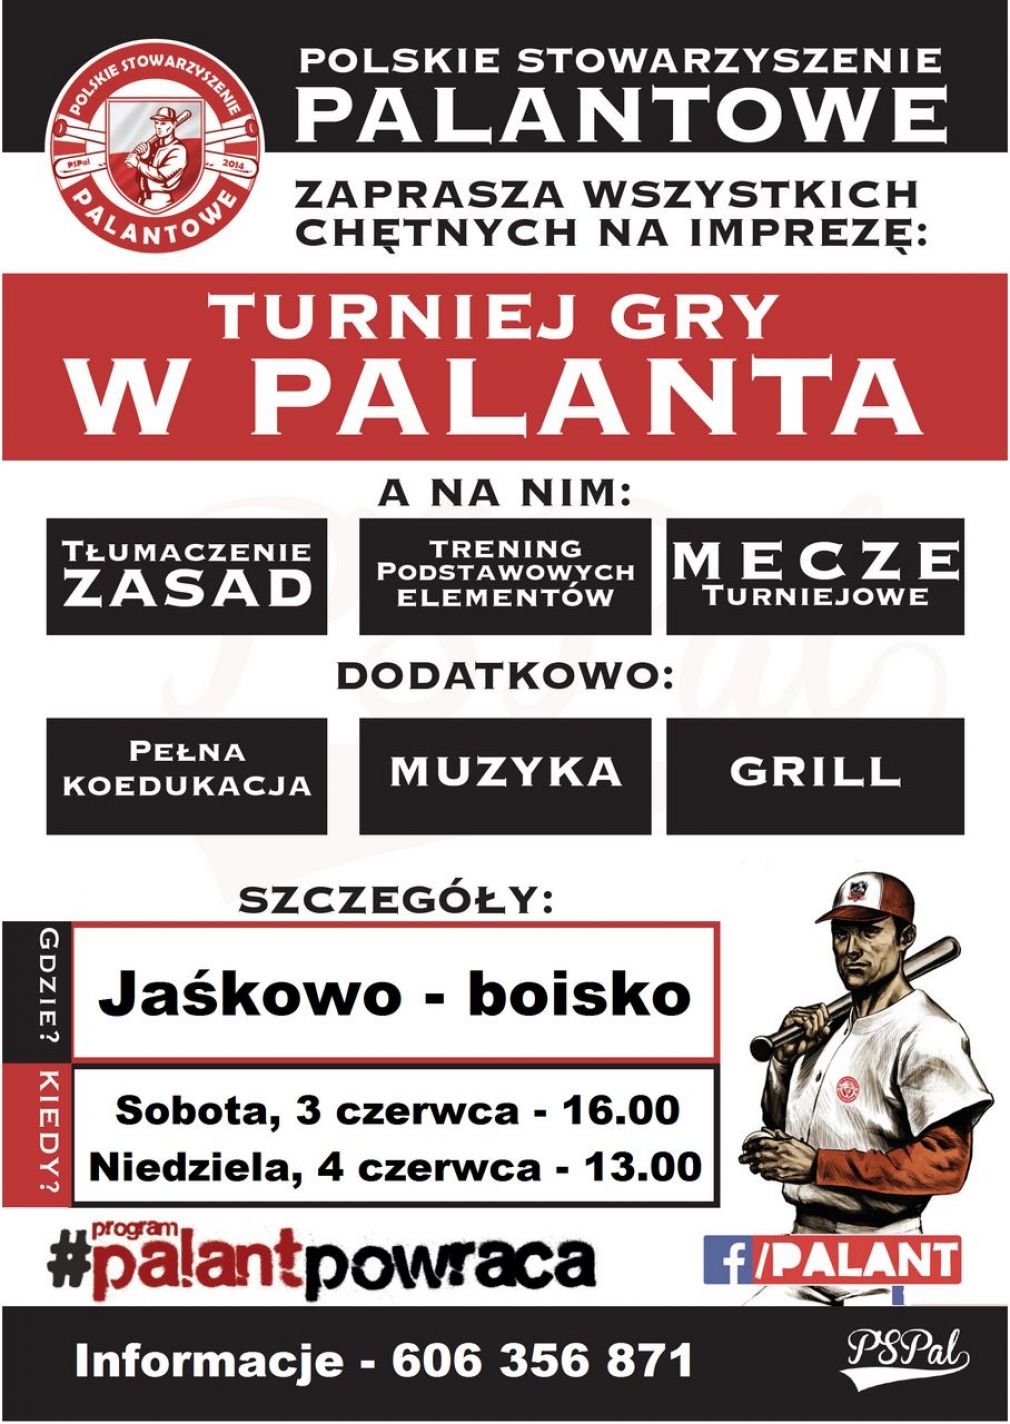 Zaproszenie na Turniej Gry w Palanta w Jaśkowie